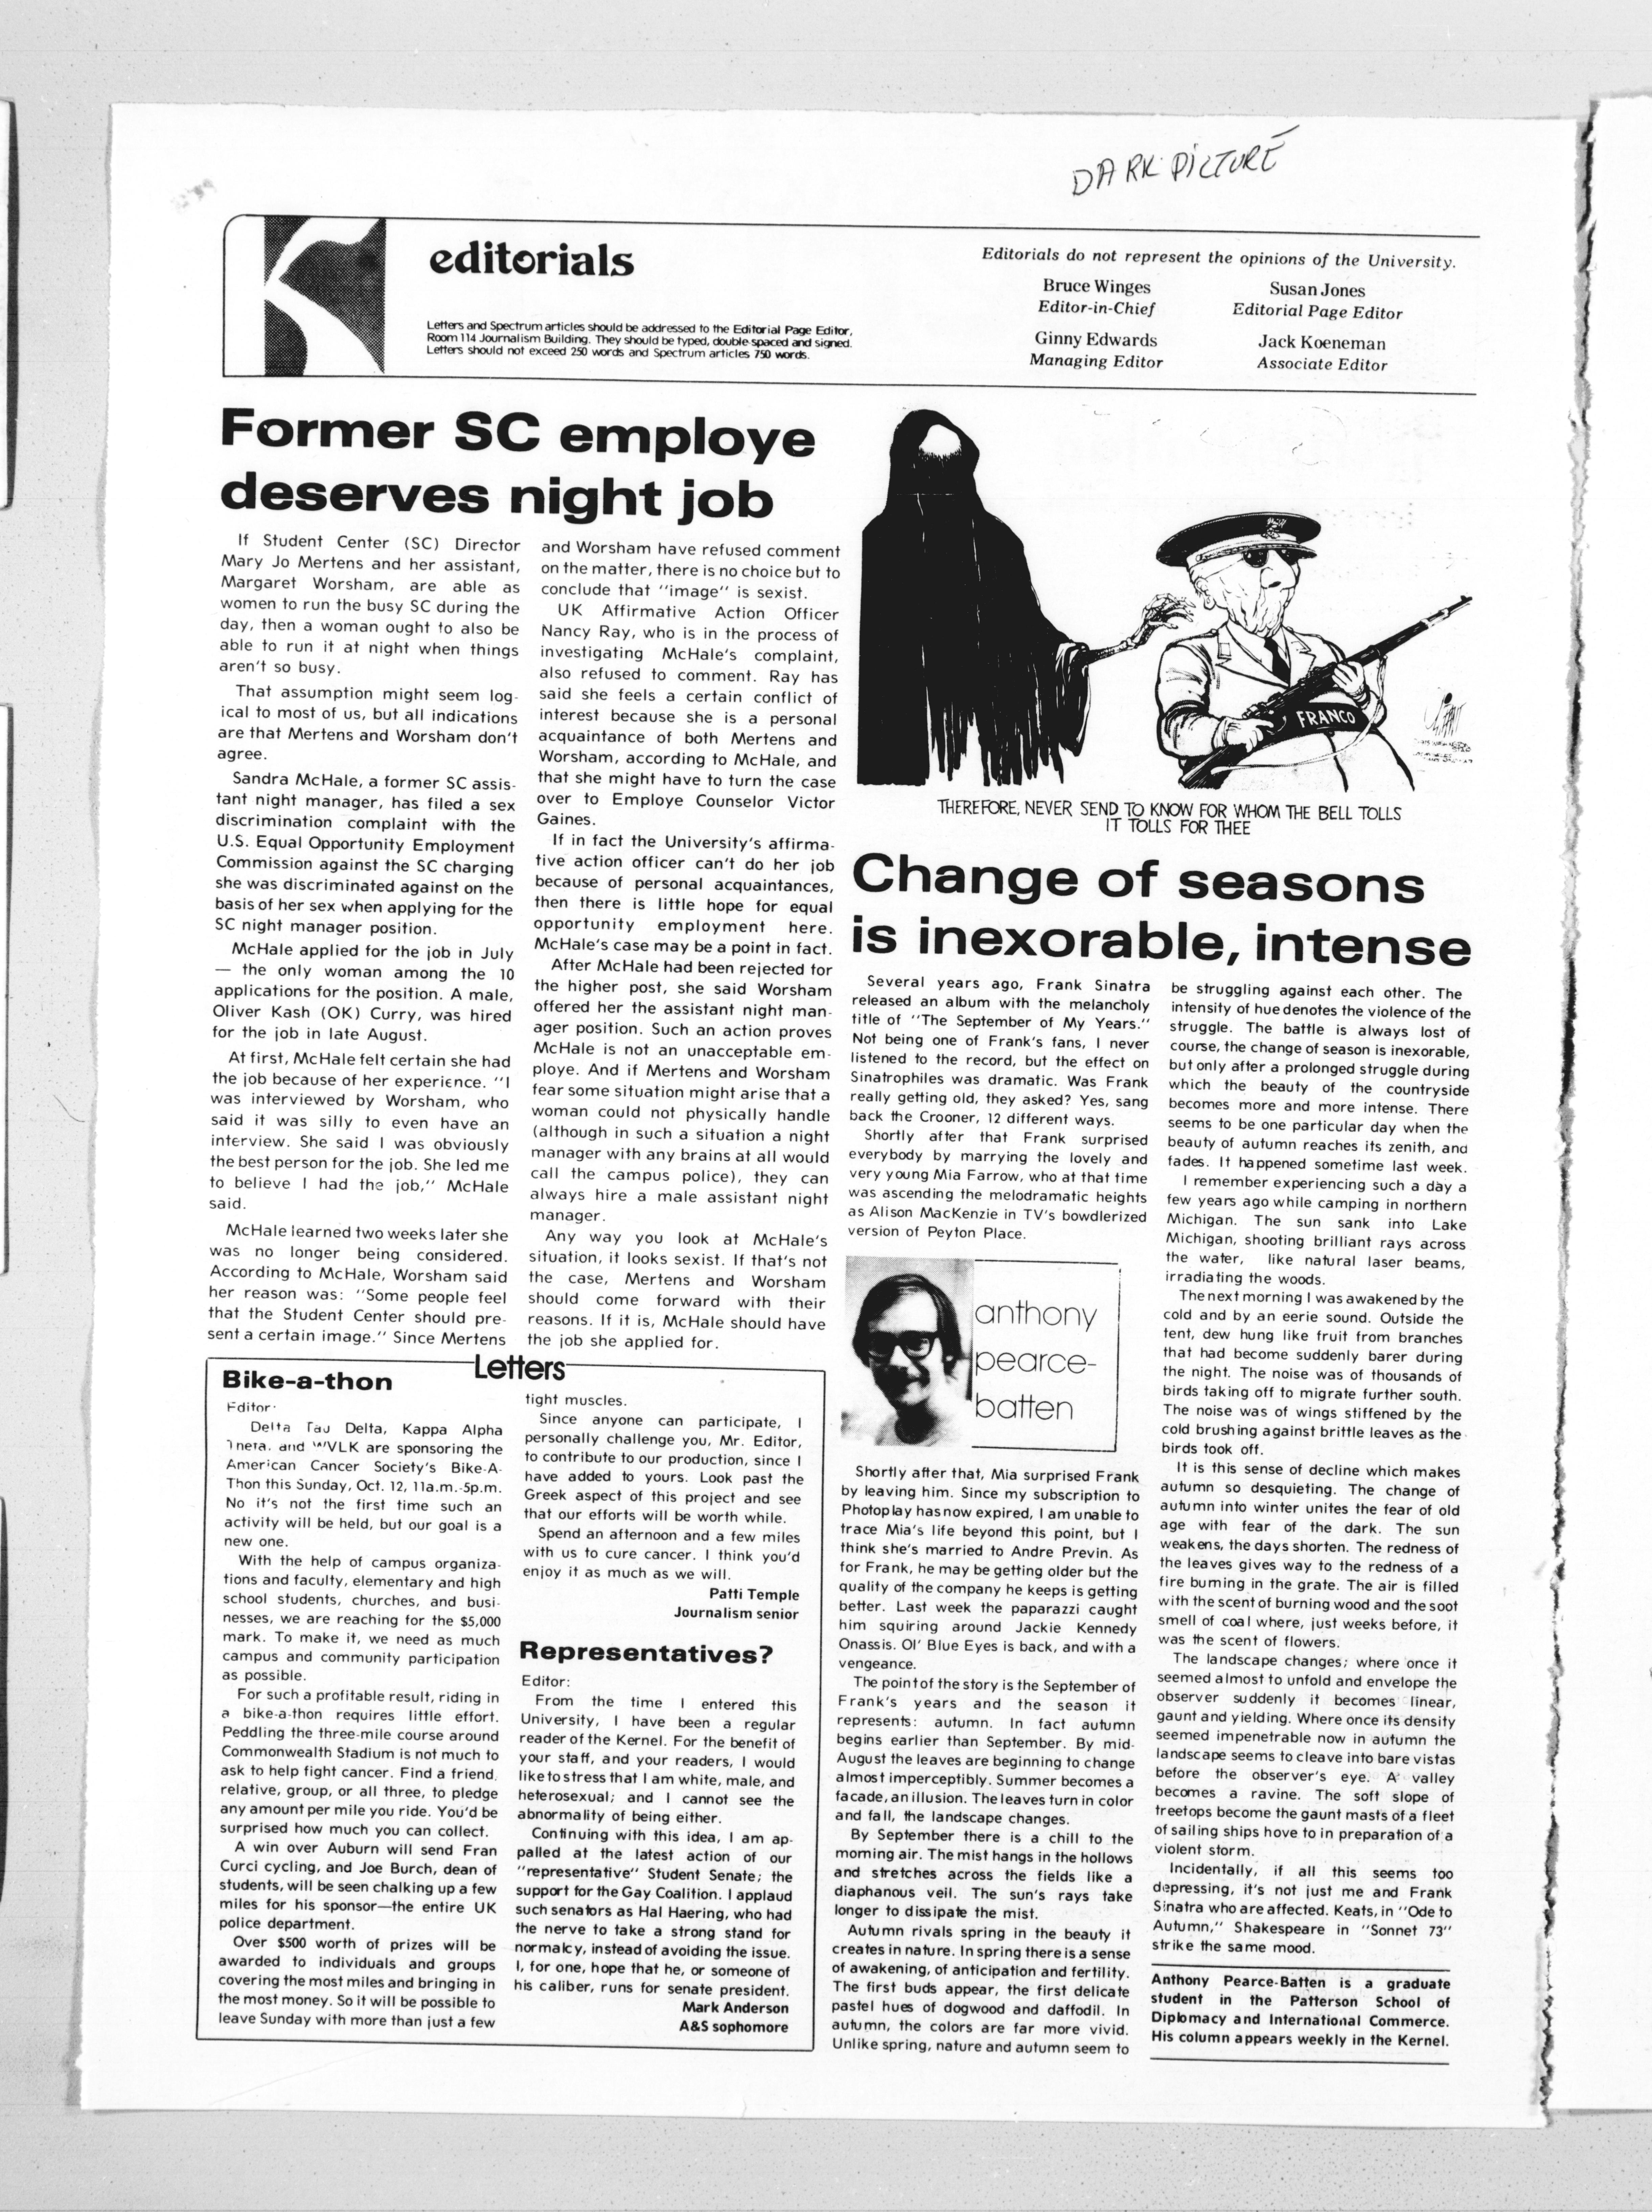 Kernel, October 10, 1975